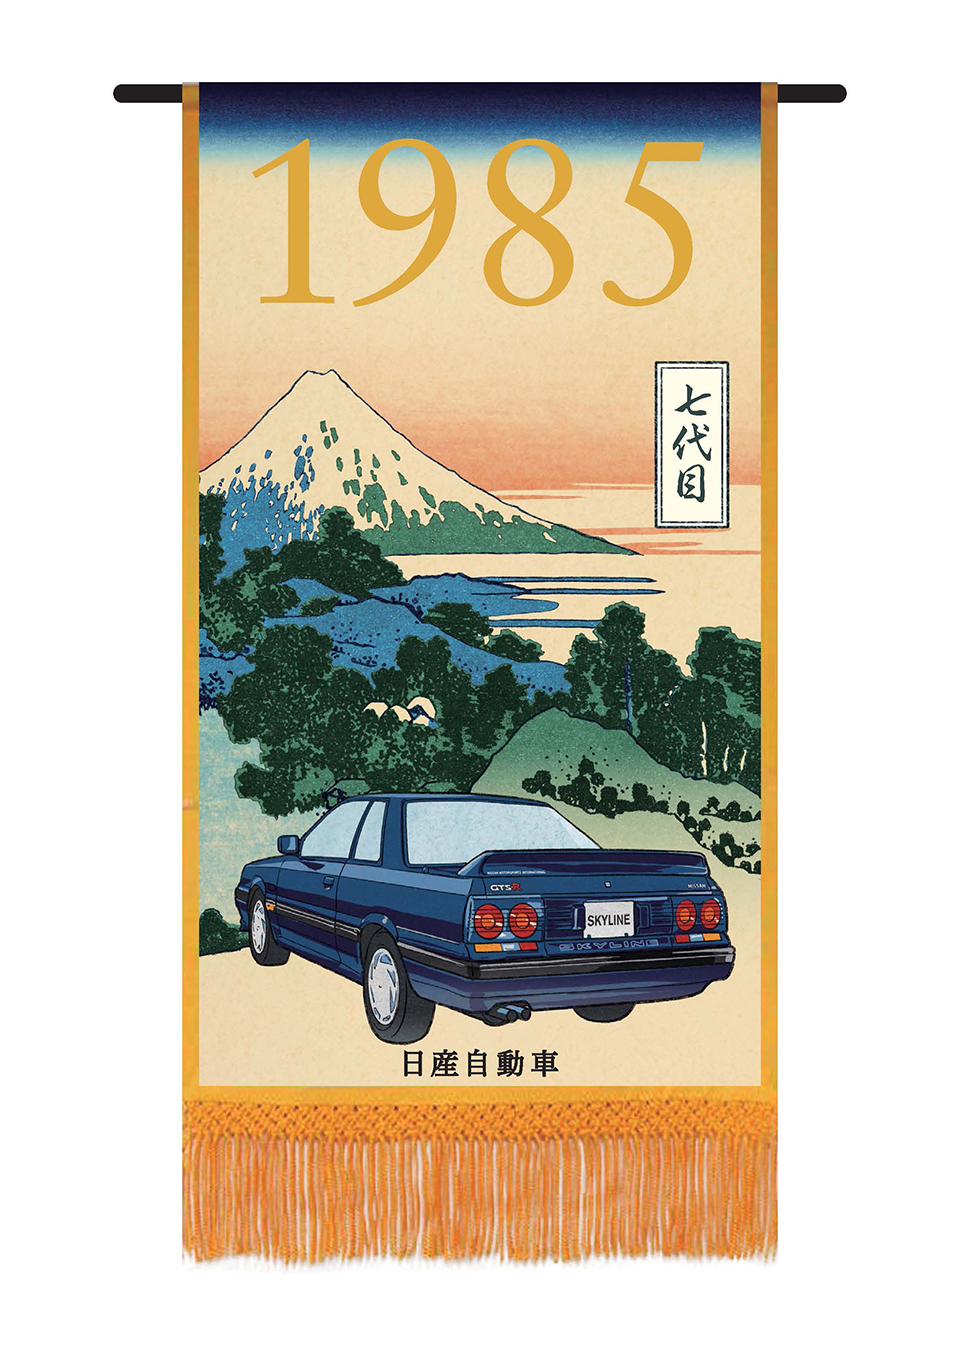 R31 Skyline появился в 1985-м. В Японии машину можно было купить с моторами мощностью от 90 до 210 сил.